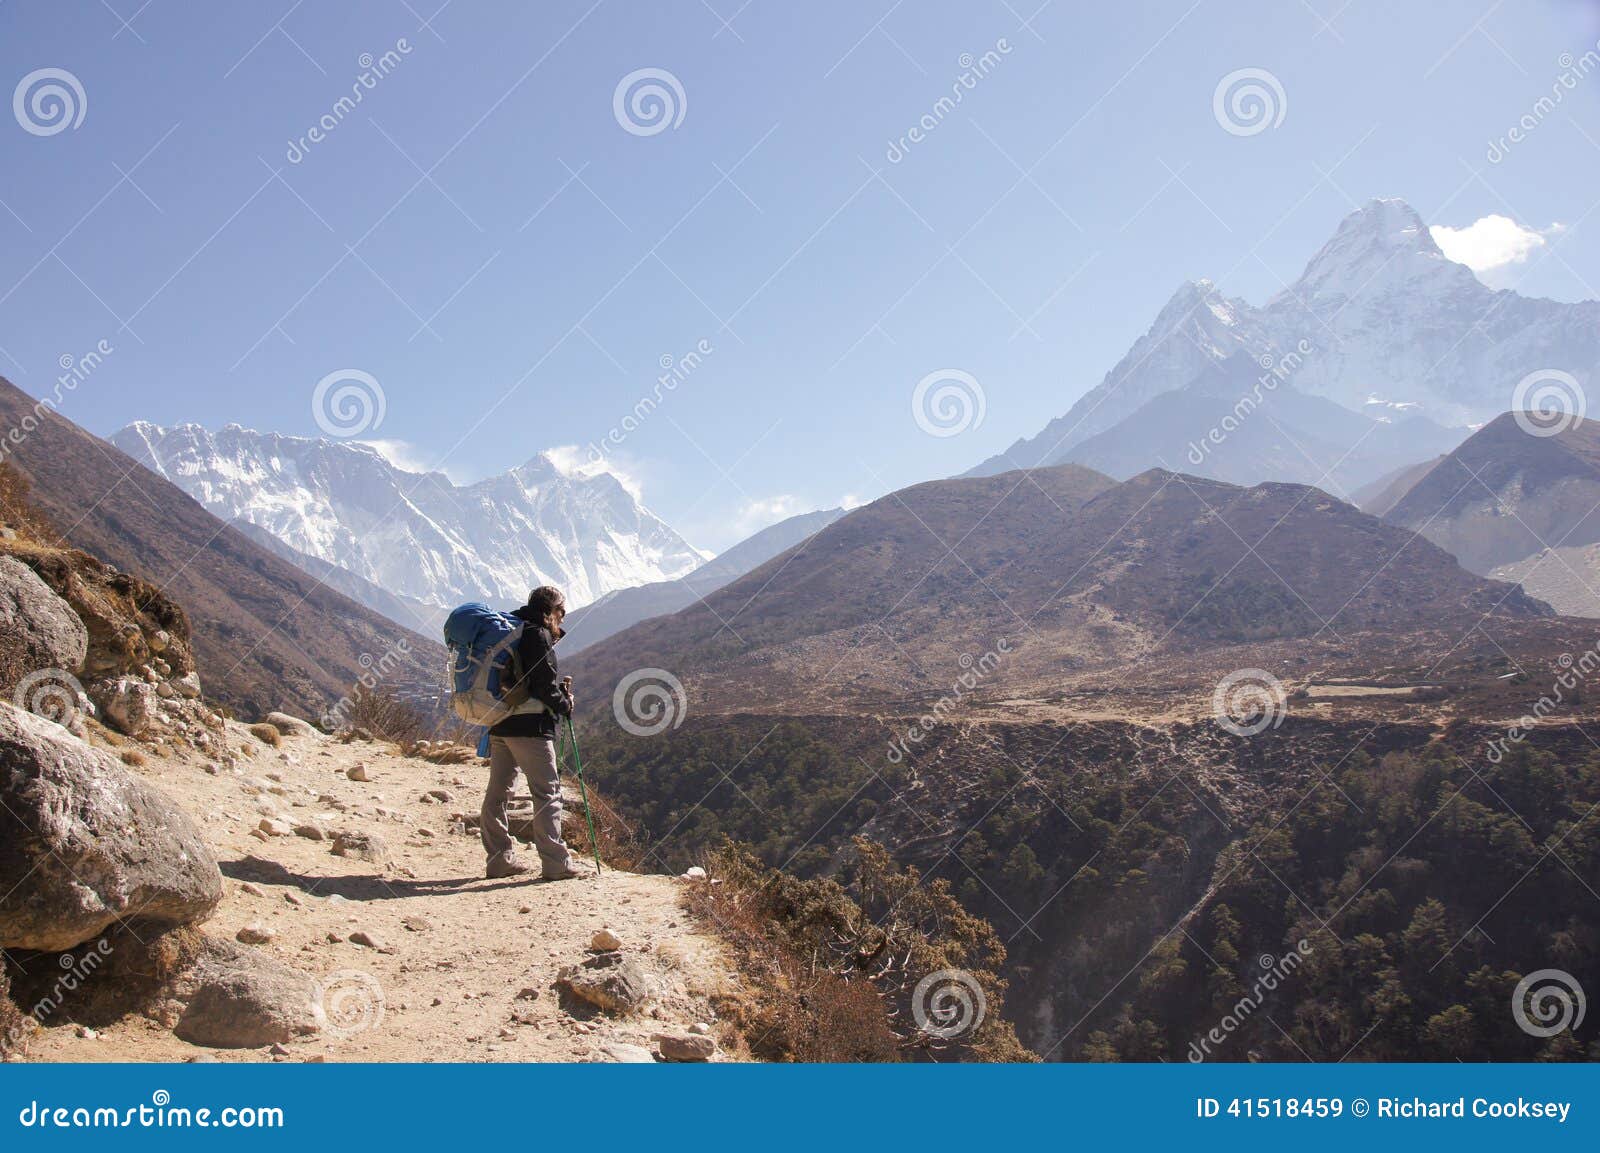 female backpacker hikes trail